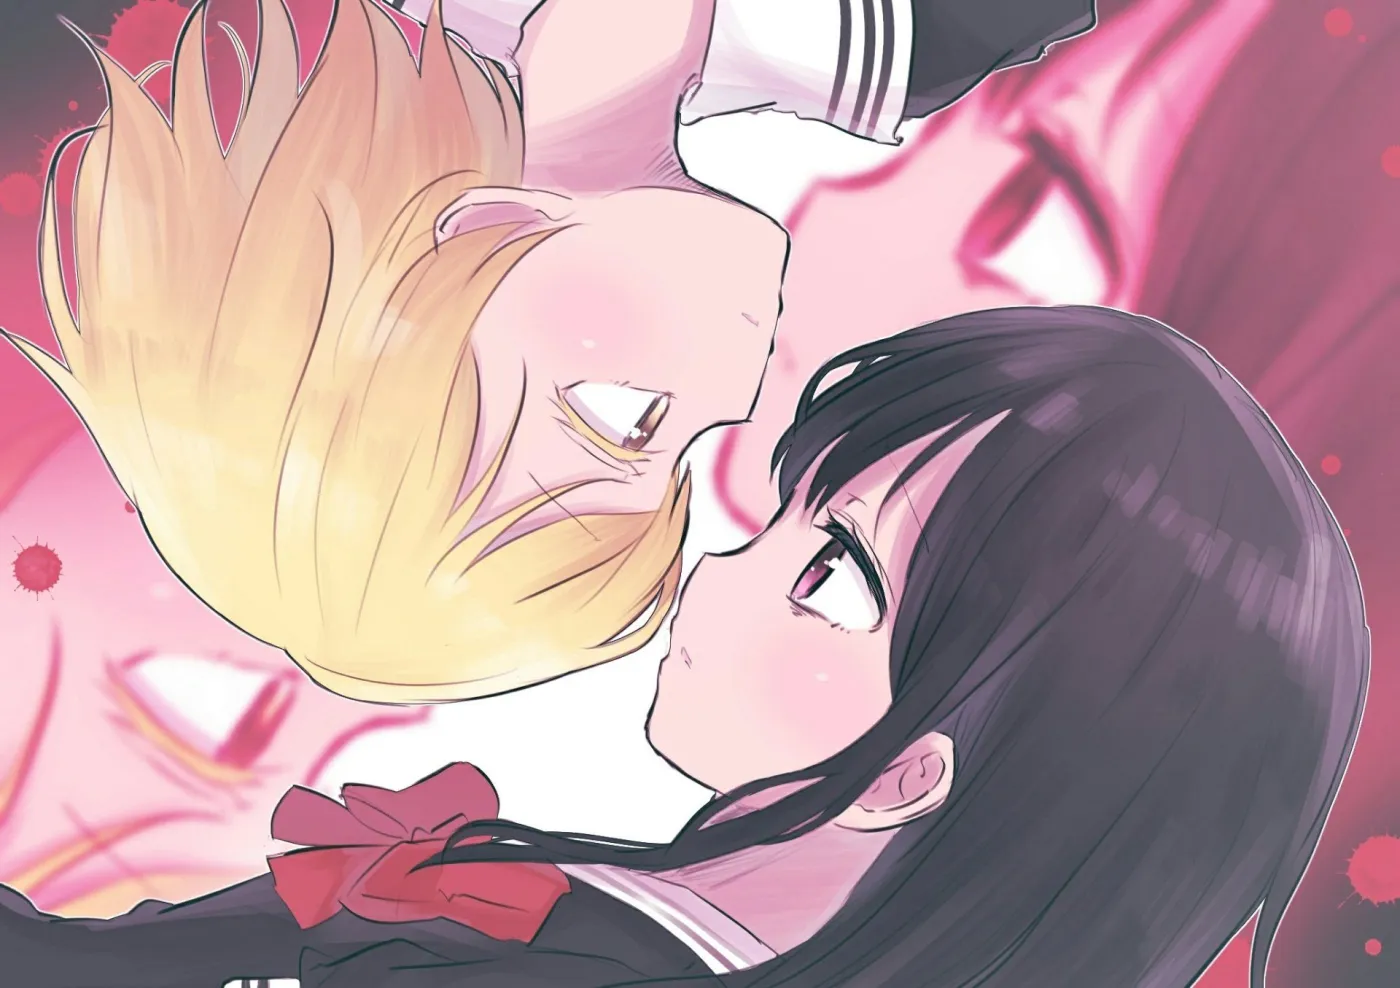 Anime Review 54 3D Girl Kanojo: Real Girl Both Seasons – TakaCode Reviews